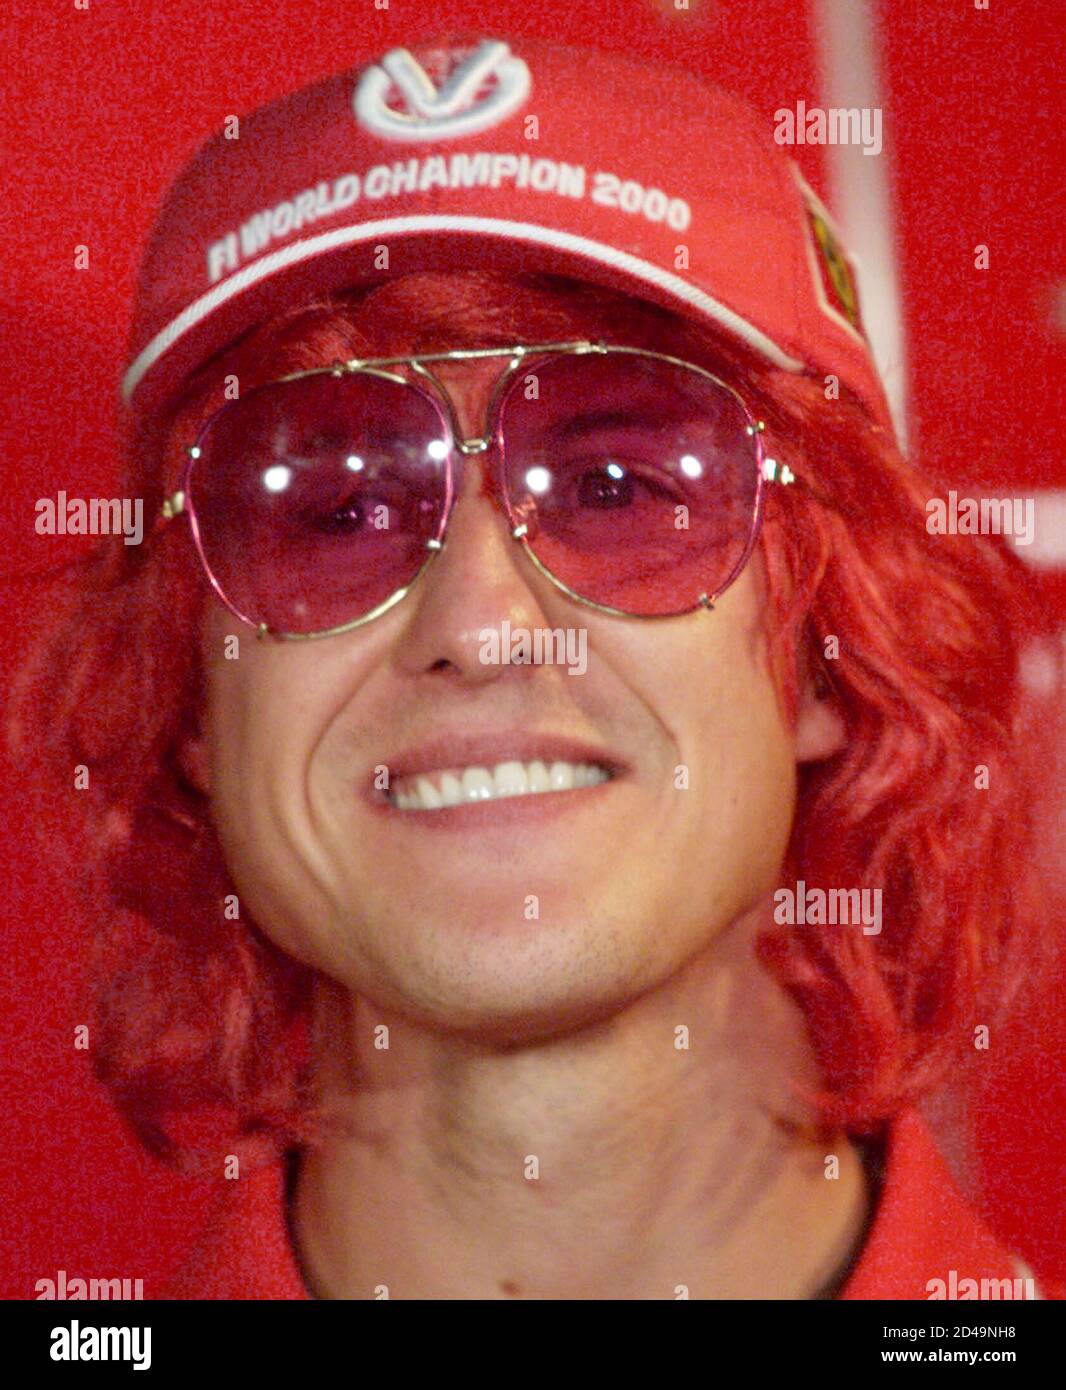 Michael Schumacher, champion du monde de Formule 1, porte une casquette de  champion du monde, une perruque de couleur scarlet pour son équipe Ferrari  et des lunettes de couleur rose lors d'une